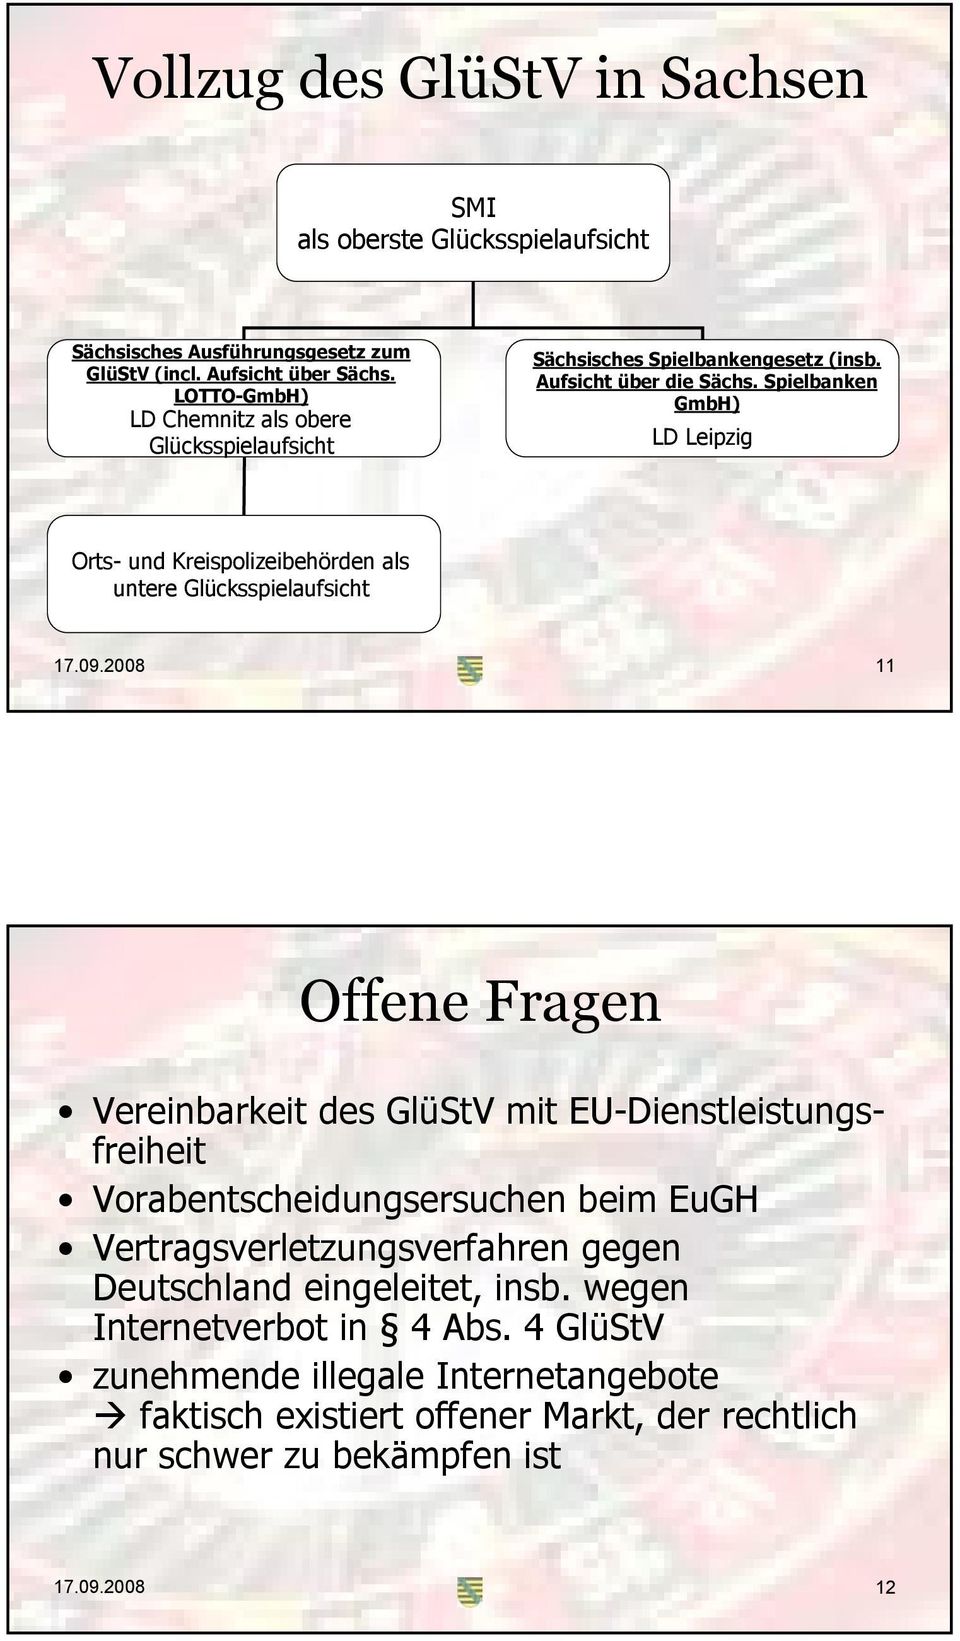 Spielbanken GmbH) LD Leipzig Orts- und Kreispolizeibehörden als untere Glücksspielaufsicht 17.09.